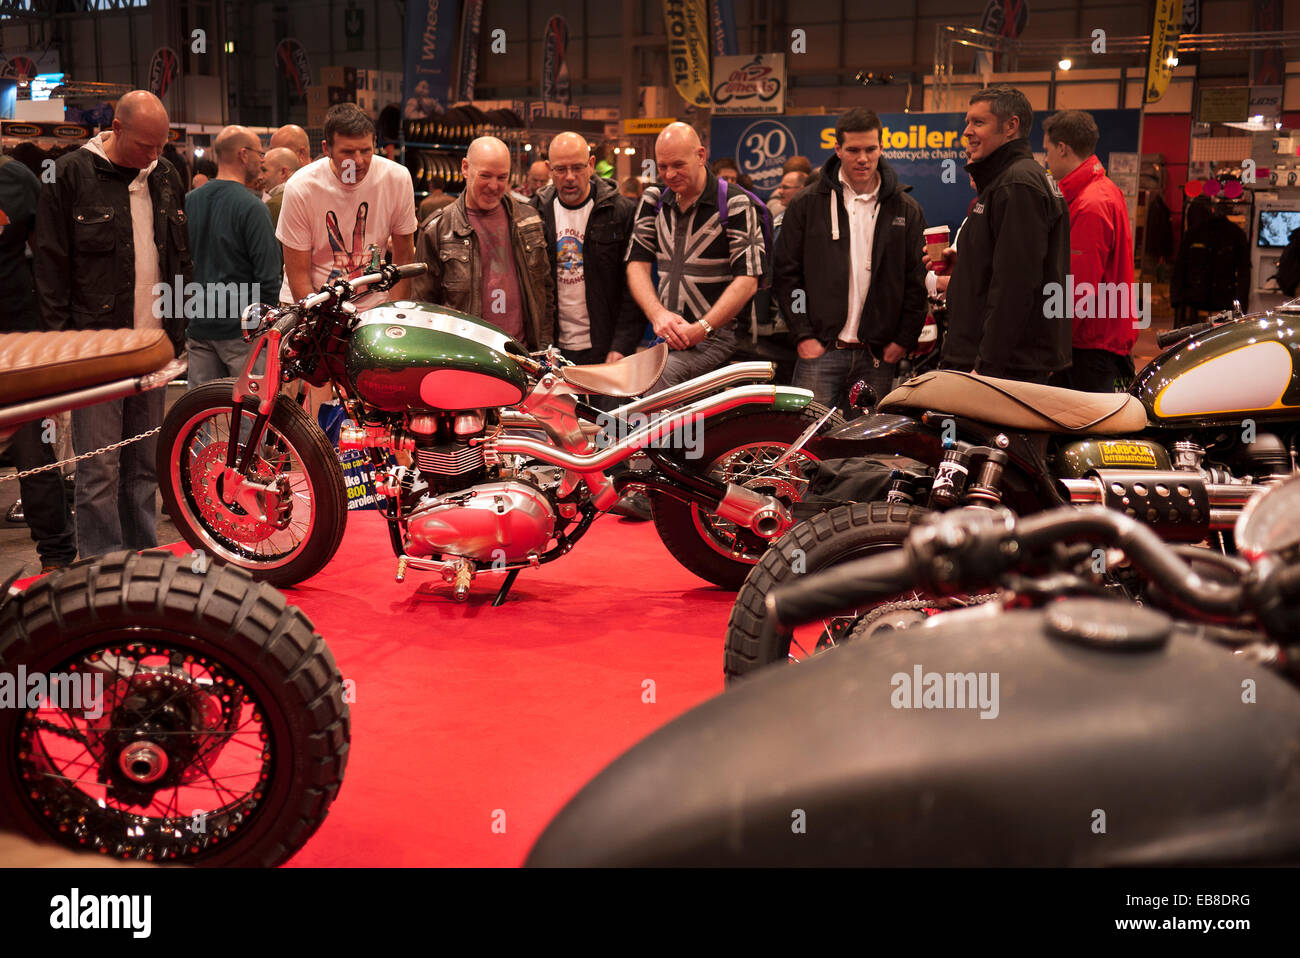 Les visiteurs de la Live show moto à Birmingham, NEC, jeter un oeil à une moto custom Triumph. Banque D'Images